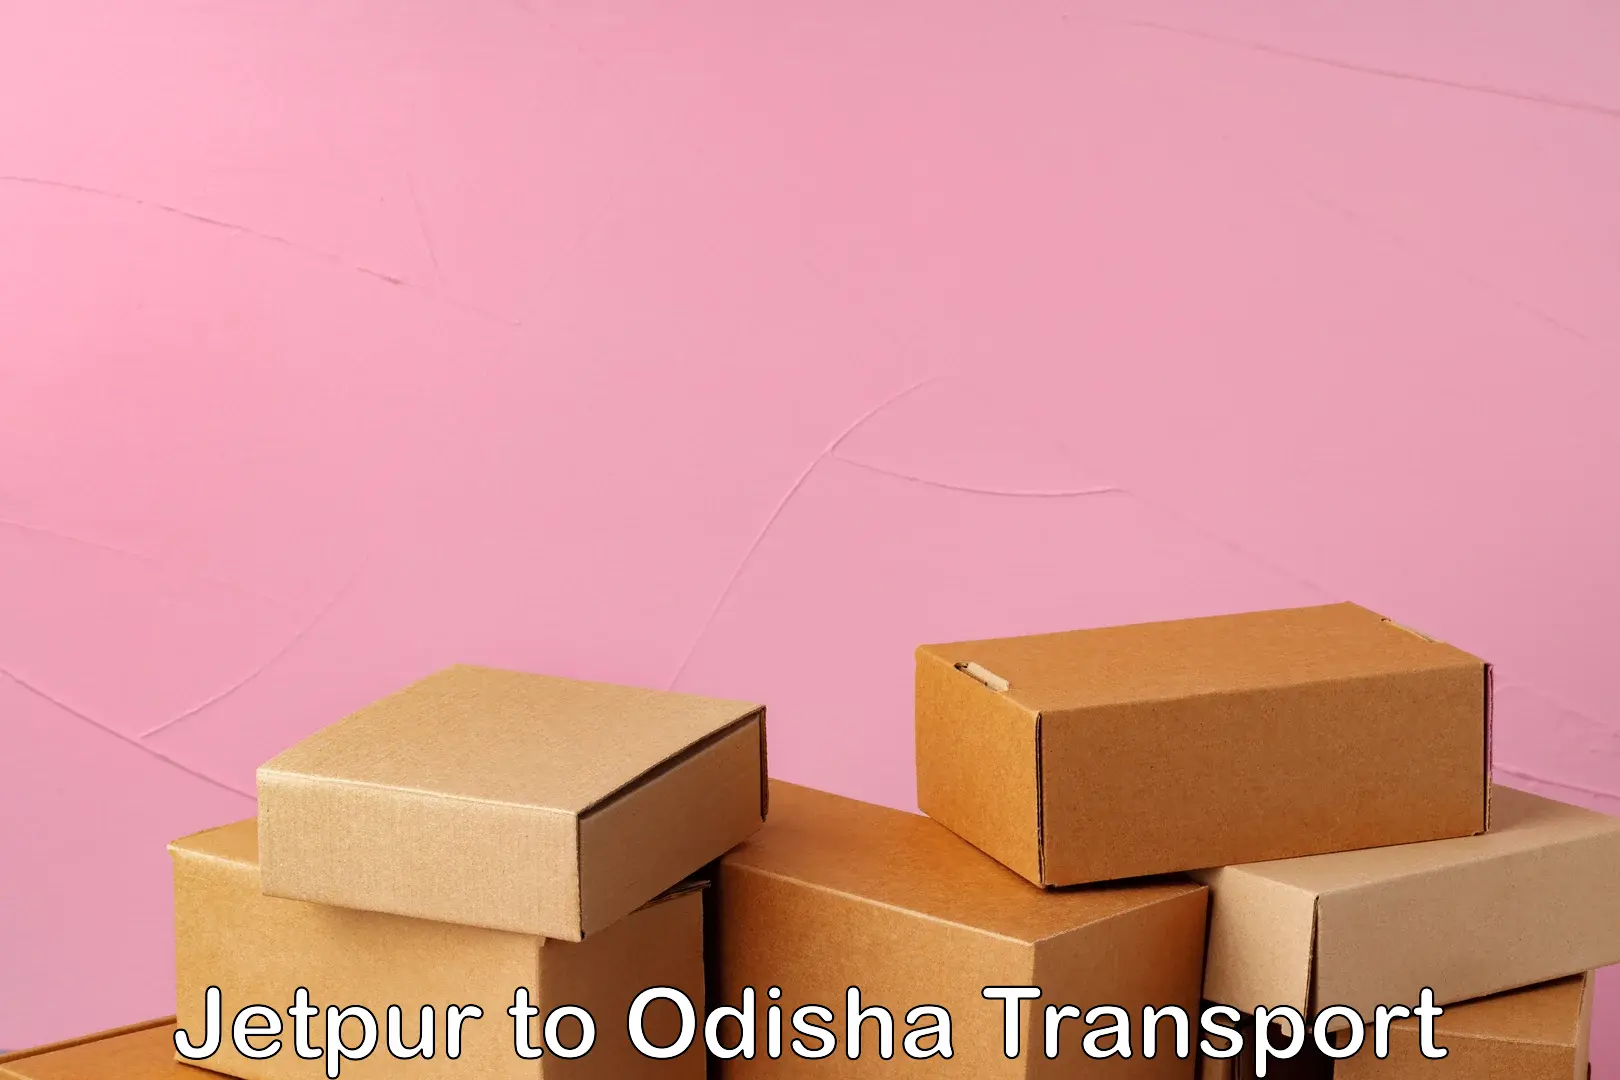 Furniture transport service Jetpur to Odisha